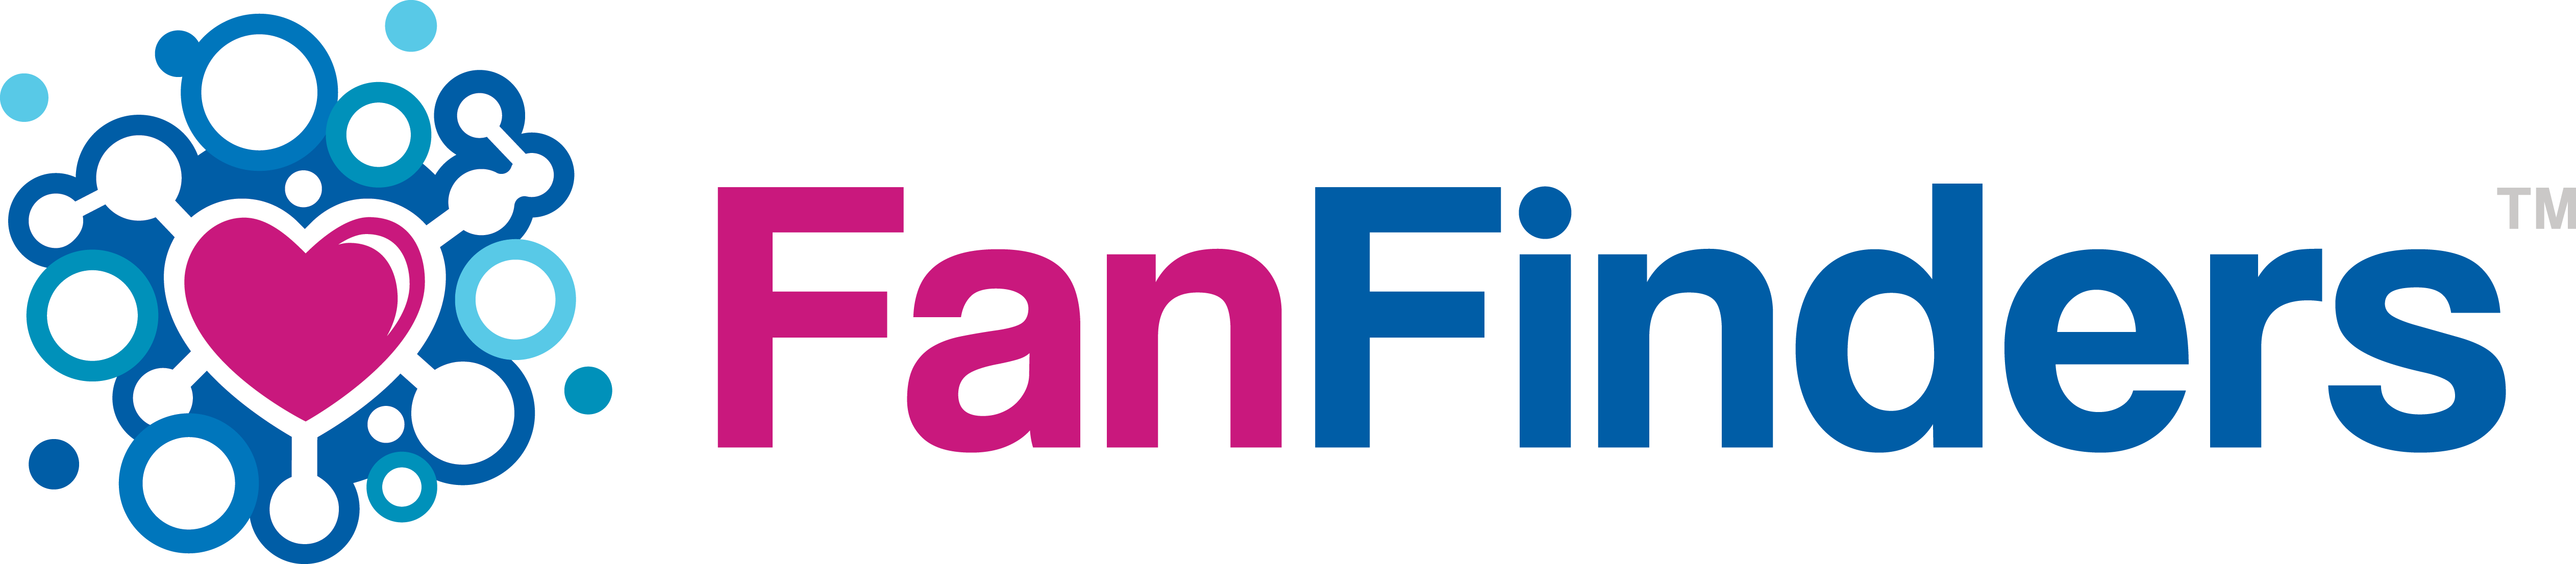 FanFinders-logo-transparent.webp